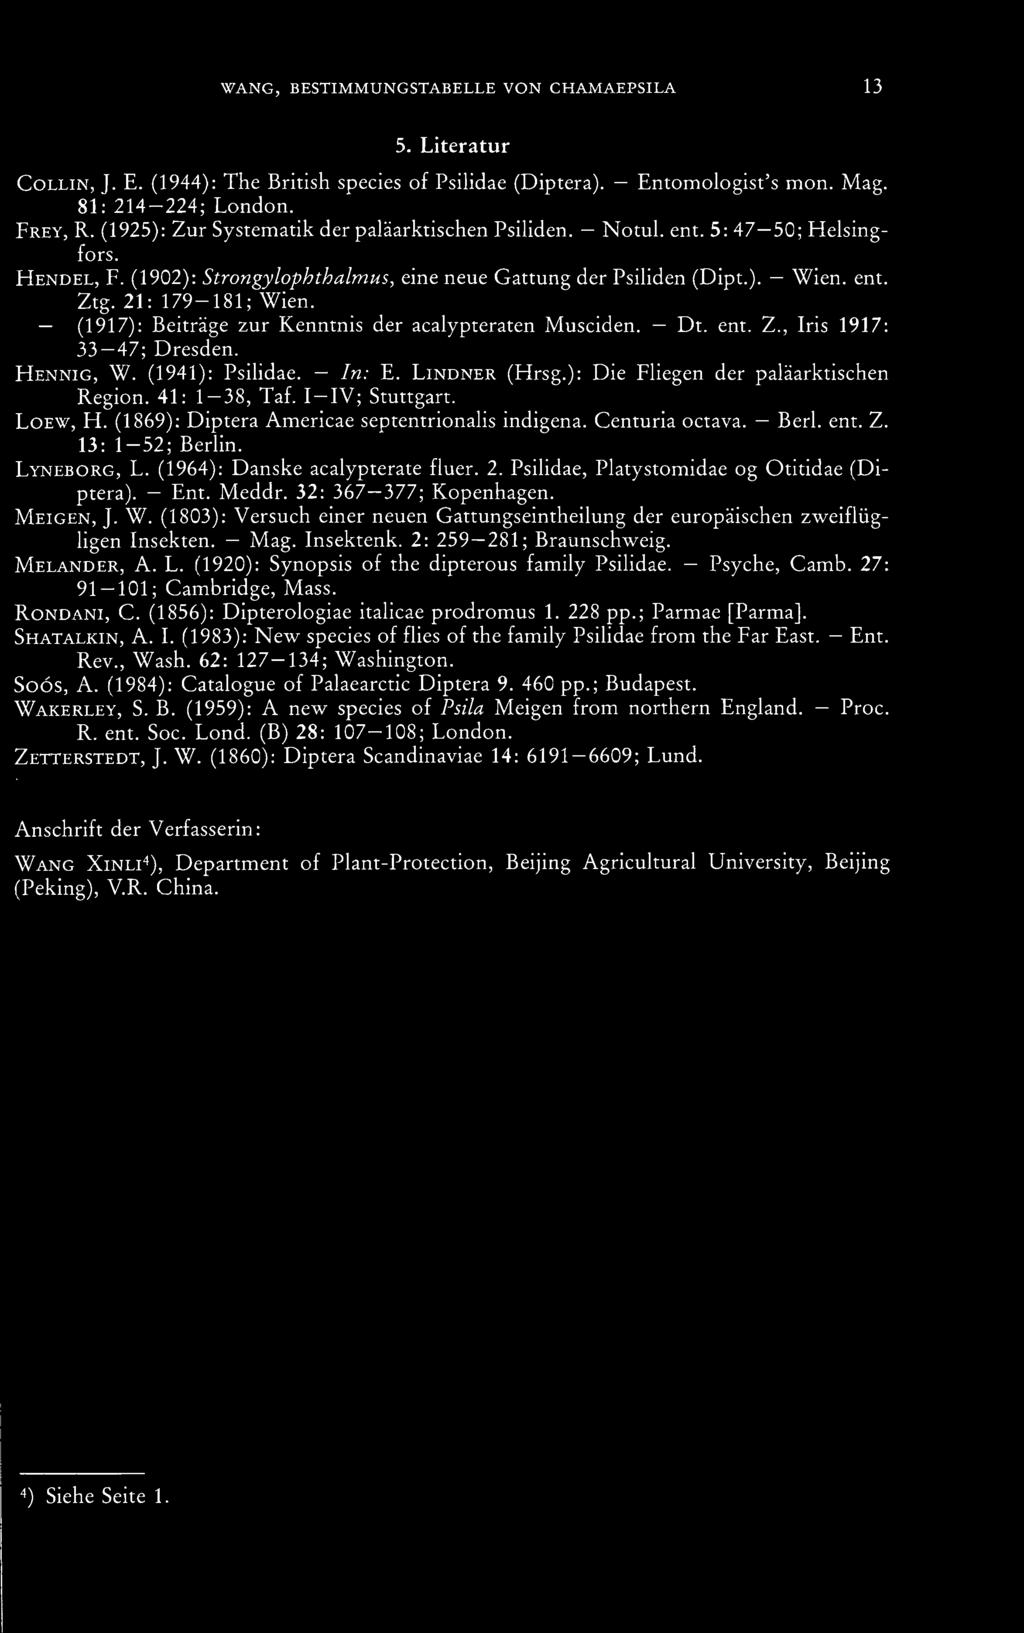 Psihdae, Platystomidae og Otitidae (Di- Ent. Meddr. 32: 367 377; Kopenhagen. ptera). Meigen, J. W. (1803): Versuch einer neuen Gattungseintheilung der europäischen zweiflüghgen Insekten. Mag.